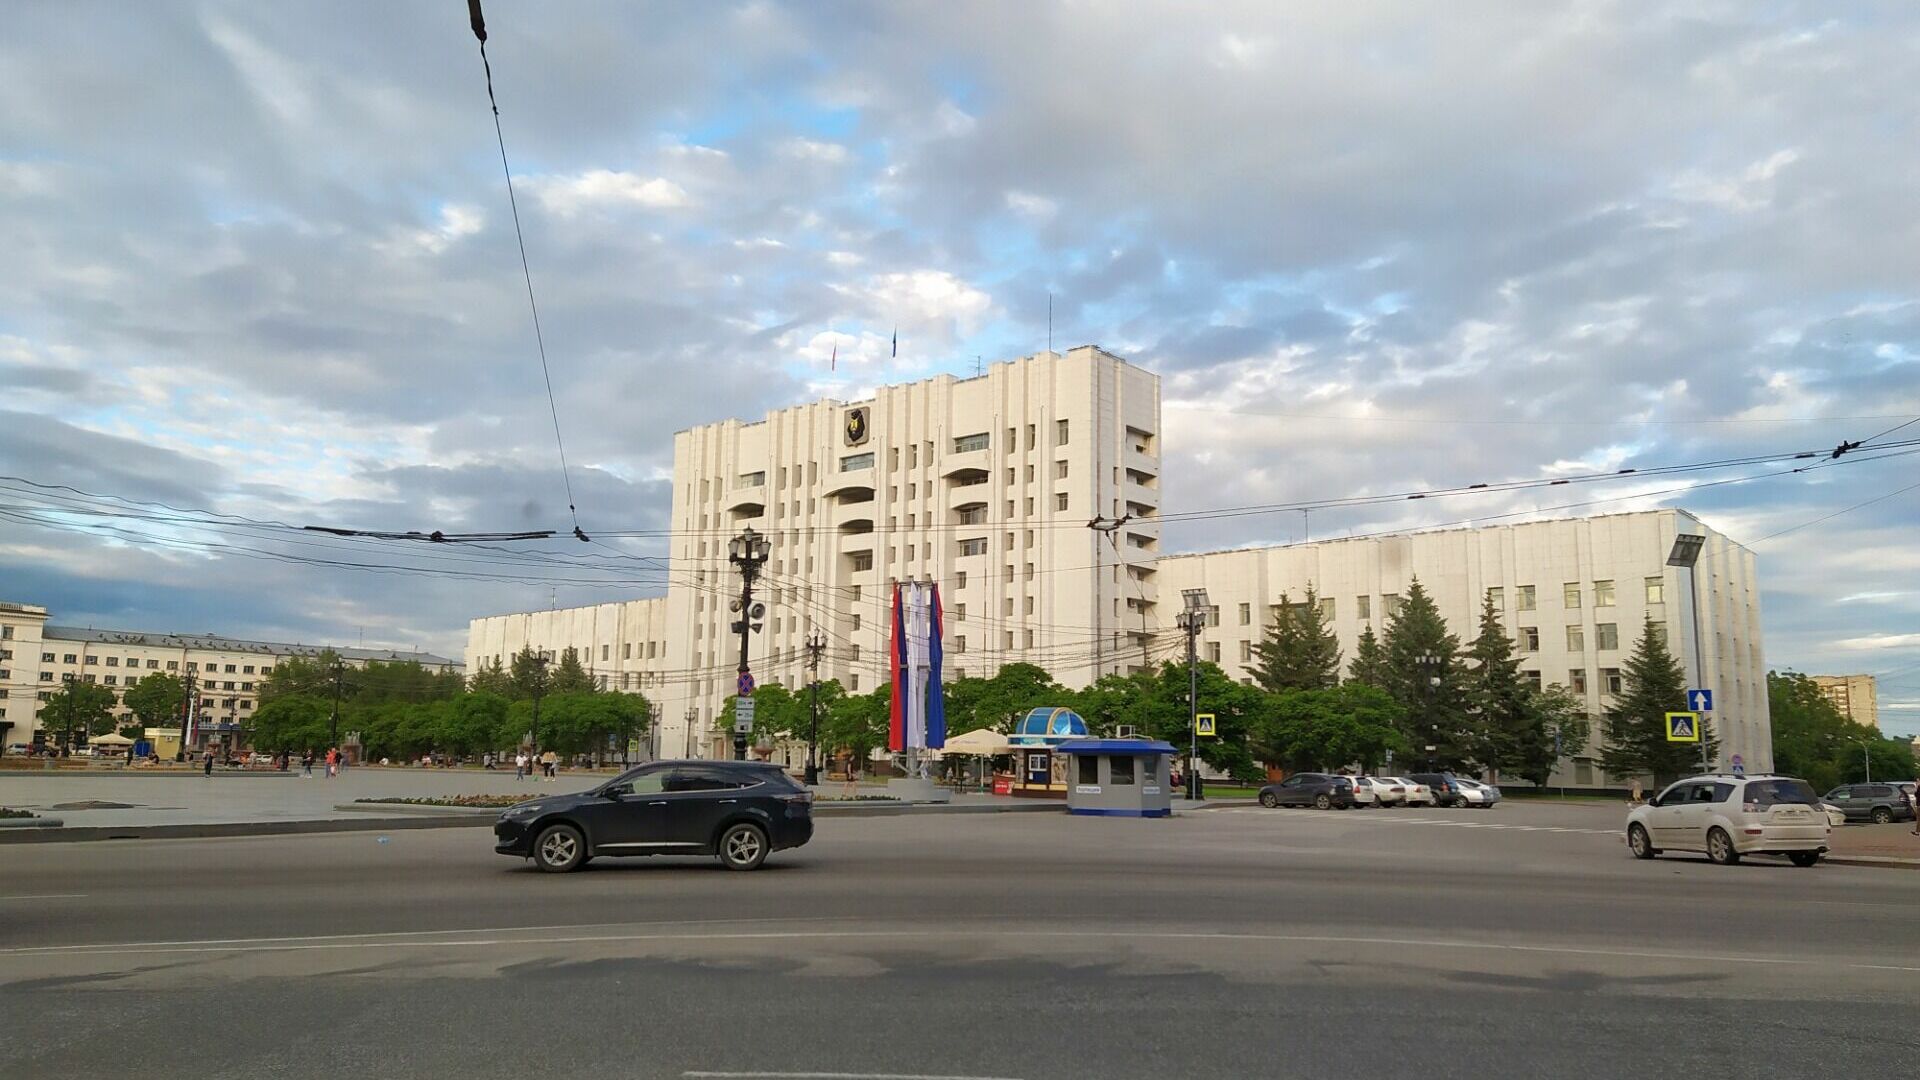 Хорошие практики берут на вооружение в Хабаровском крае — депутаты